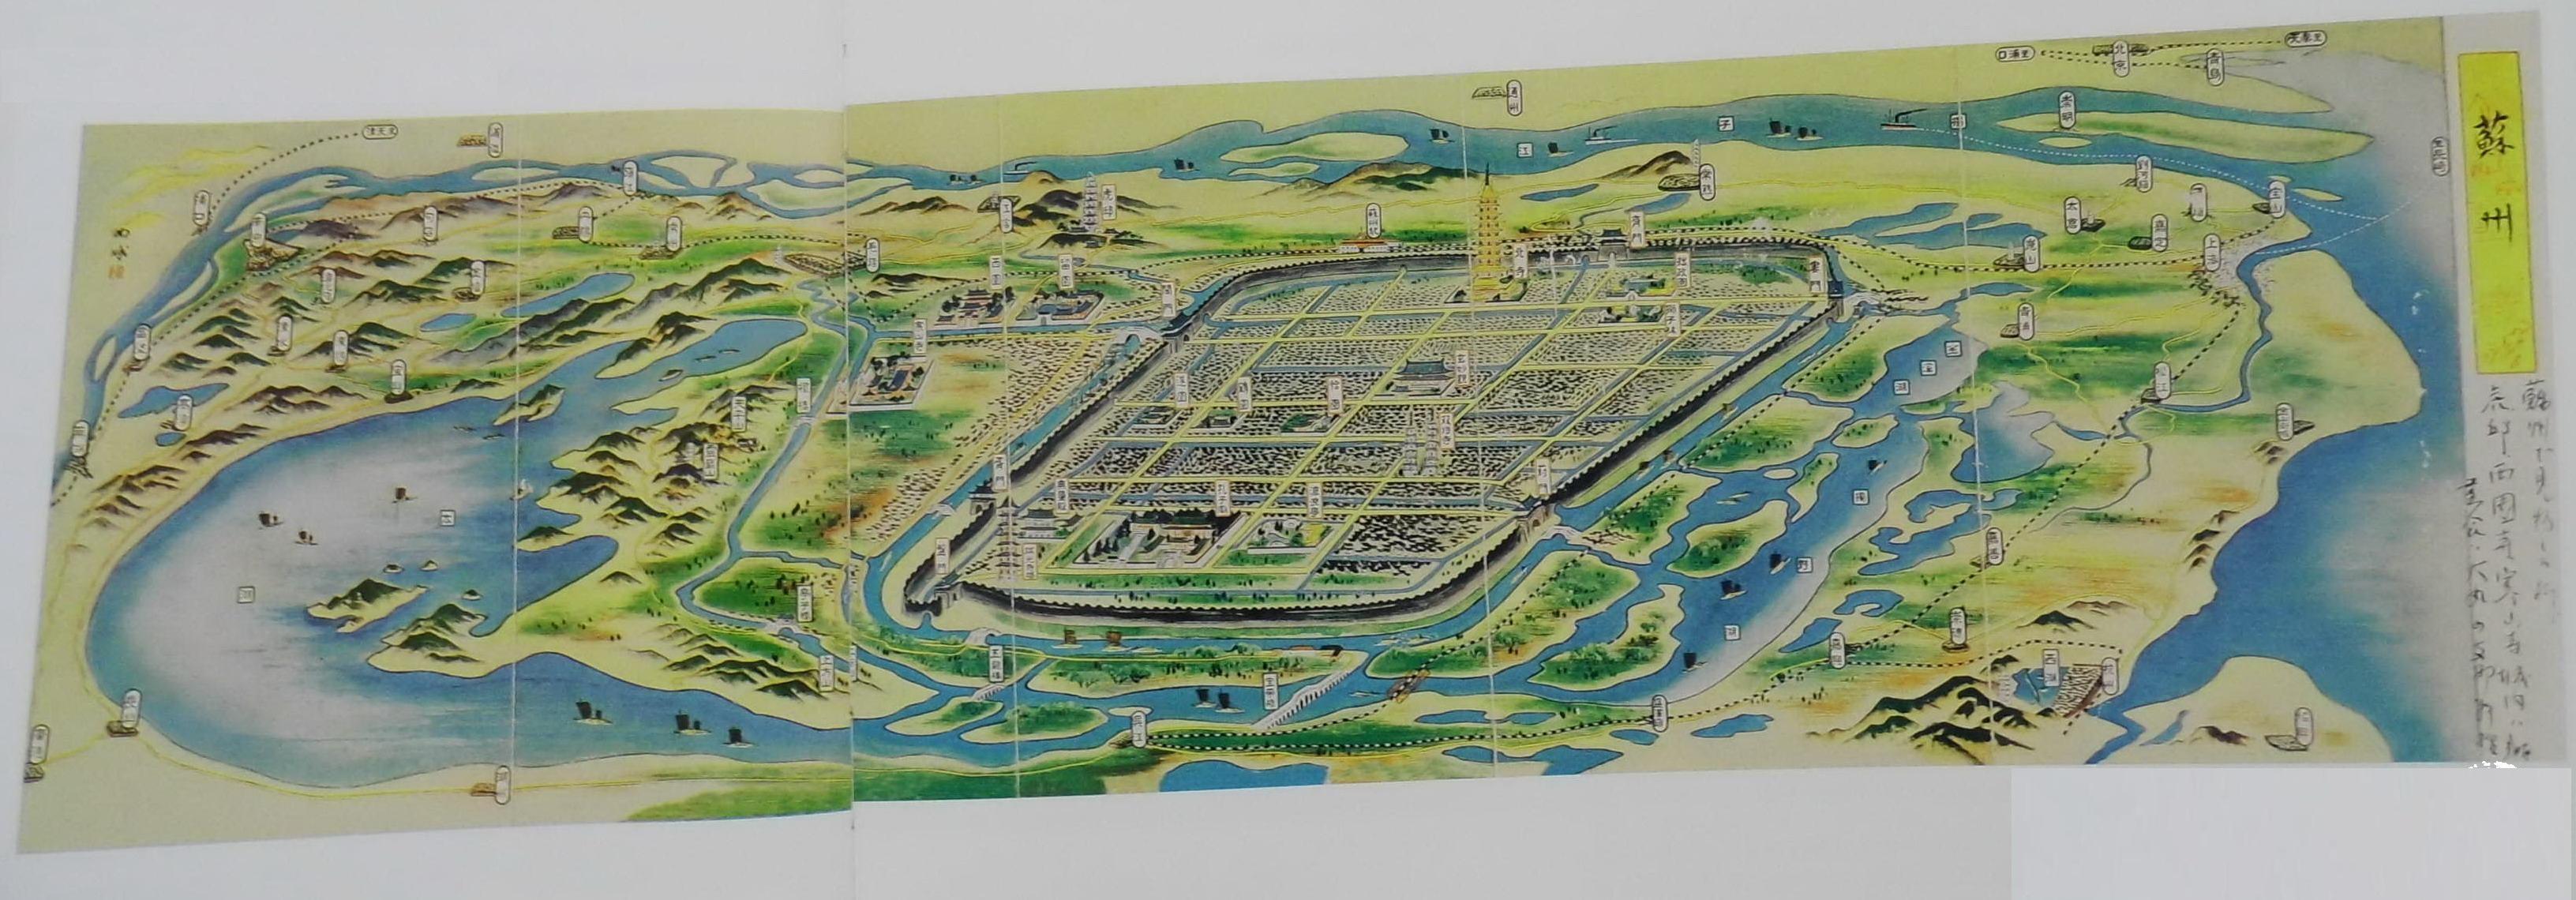 抗日战争前,日本派间谍绘制中国多个大城市地图